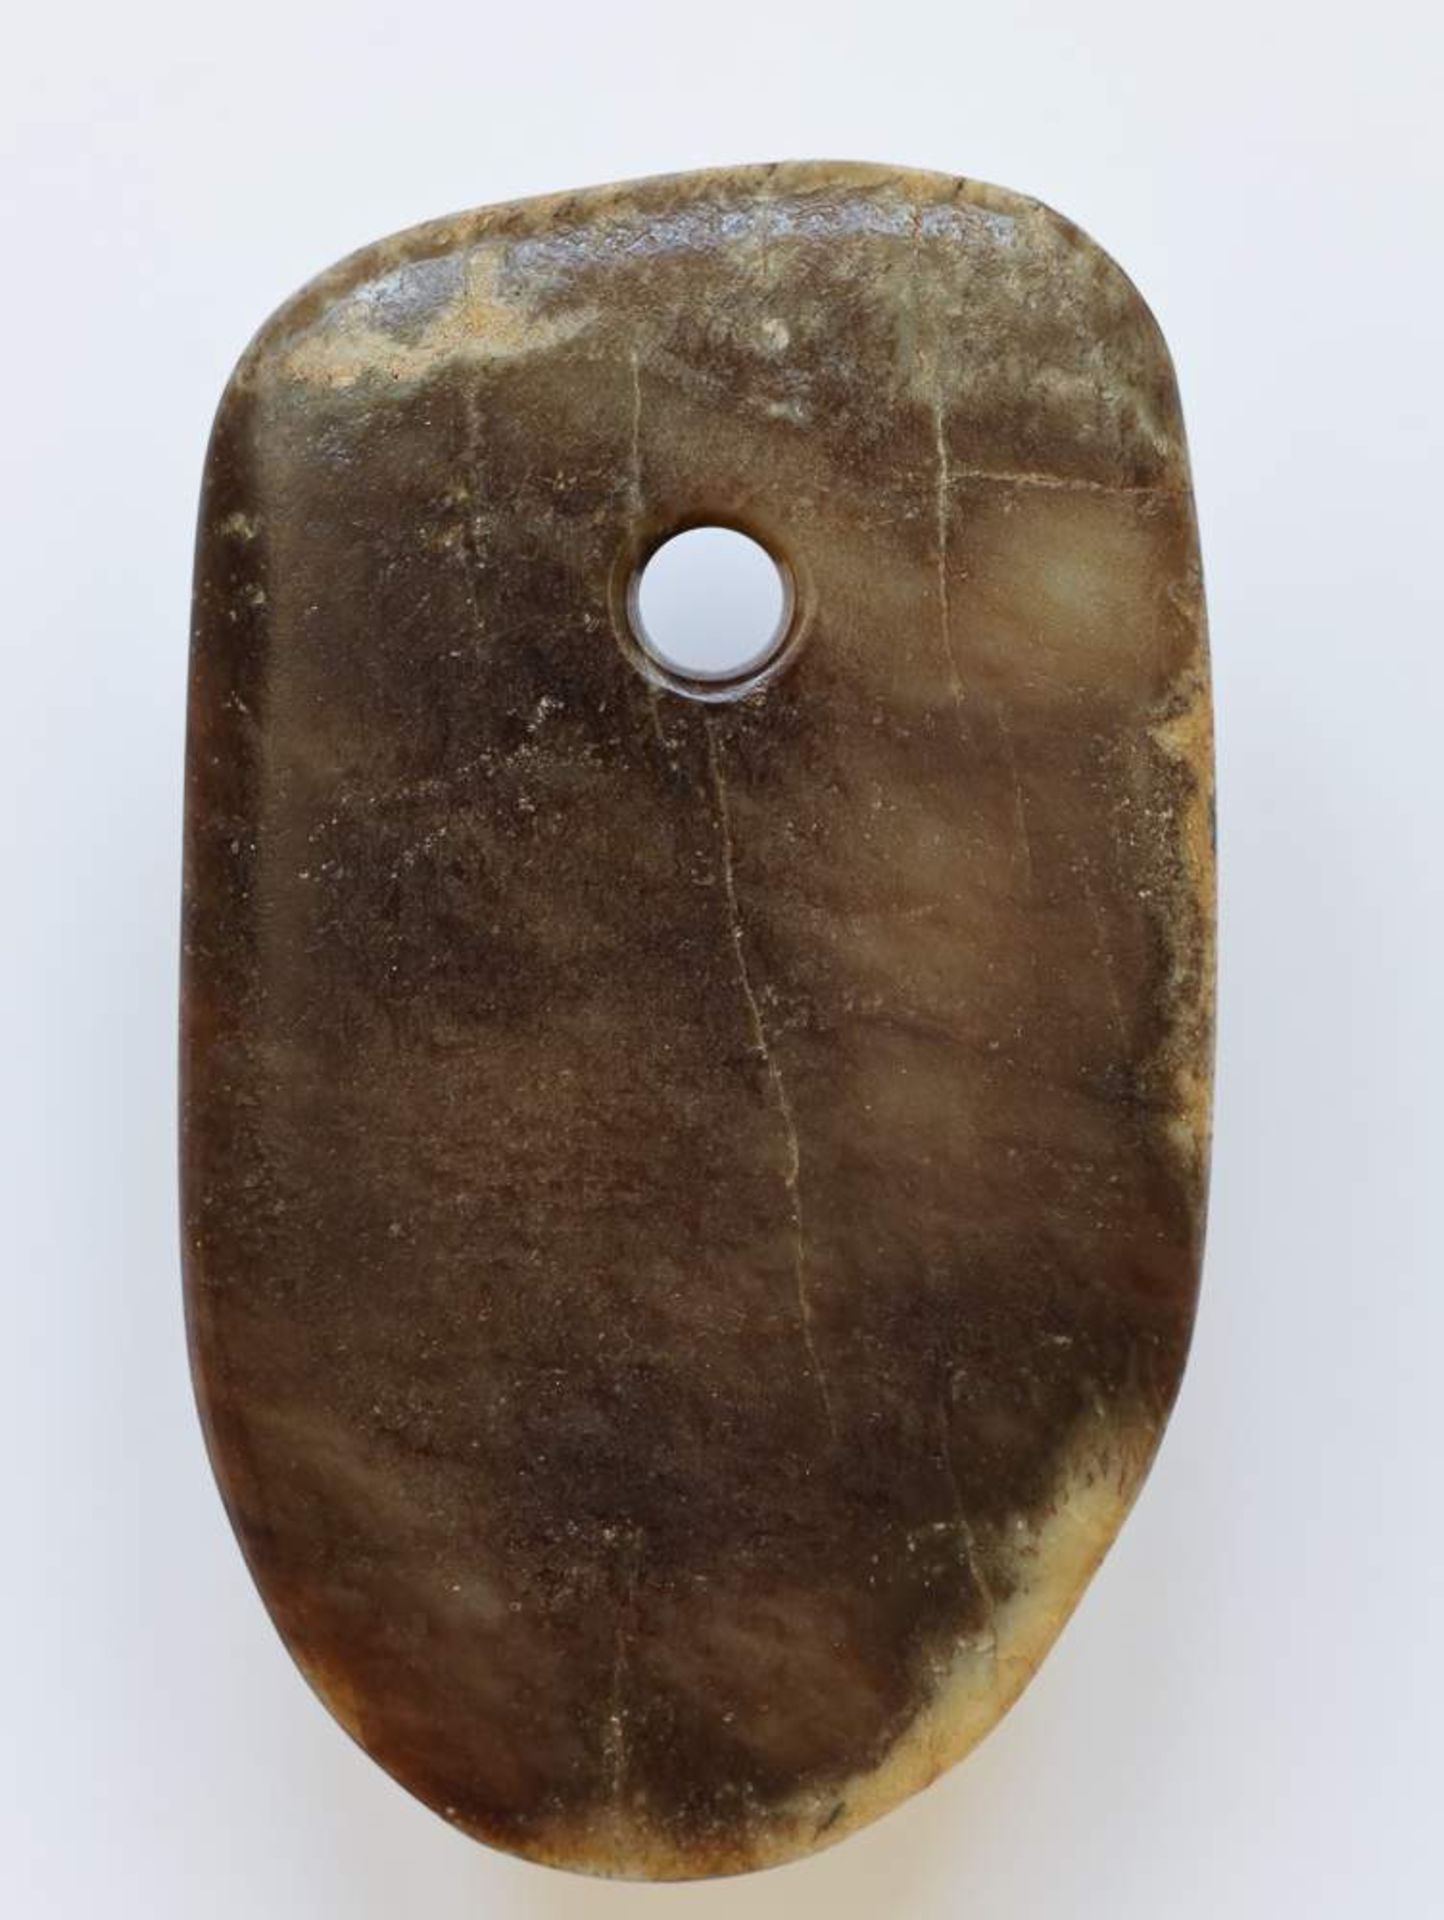 RITUELLES BEIL FUJade. China, sp. neolithische Zeit, möglw. Qijia-Kultur, ca. 2200 bis 1900